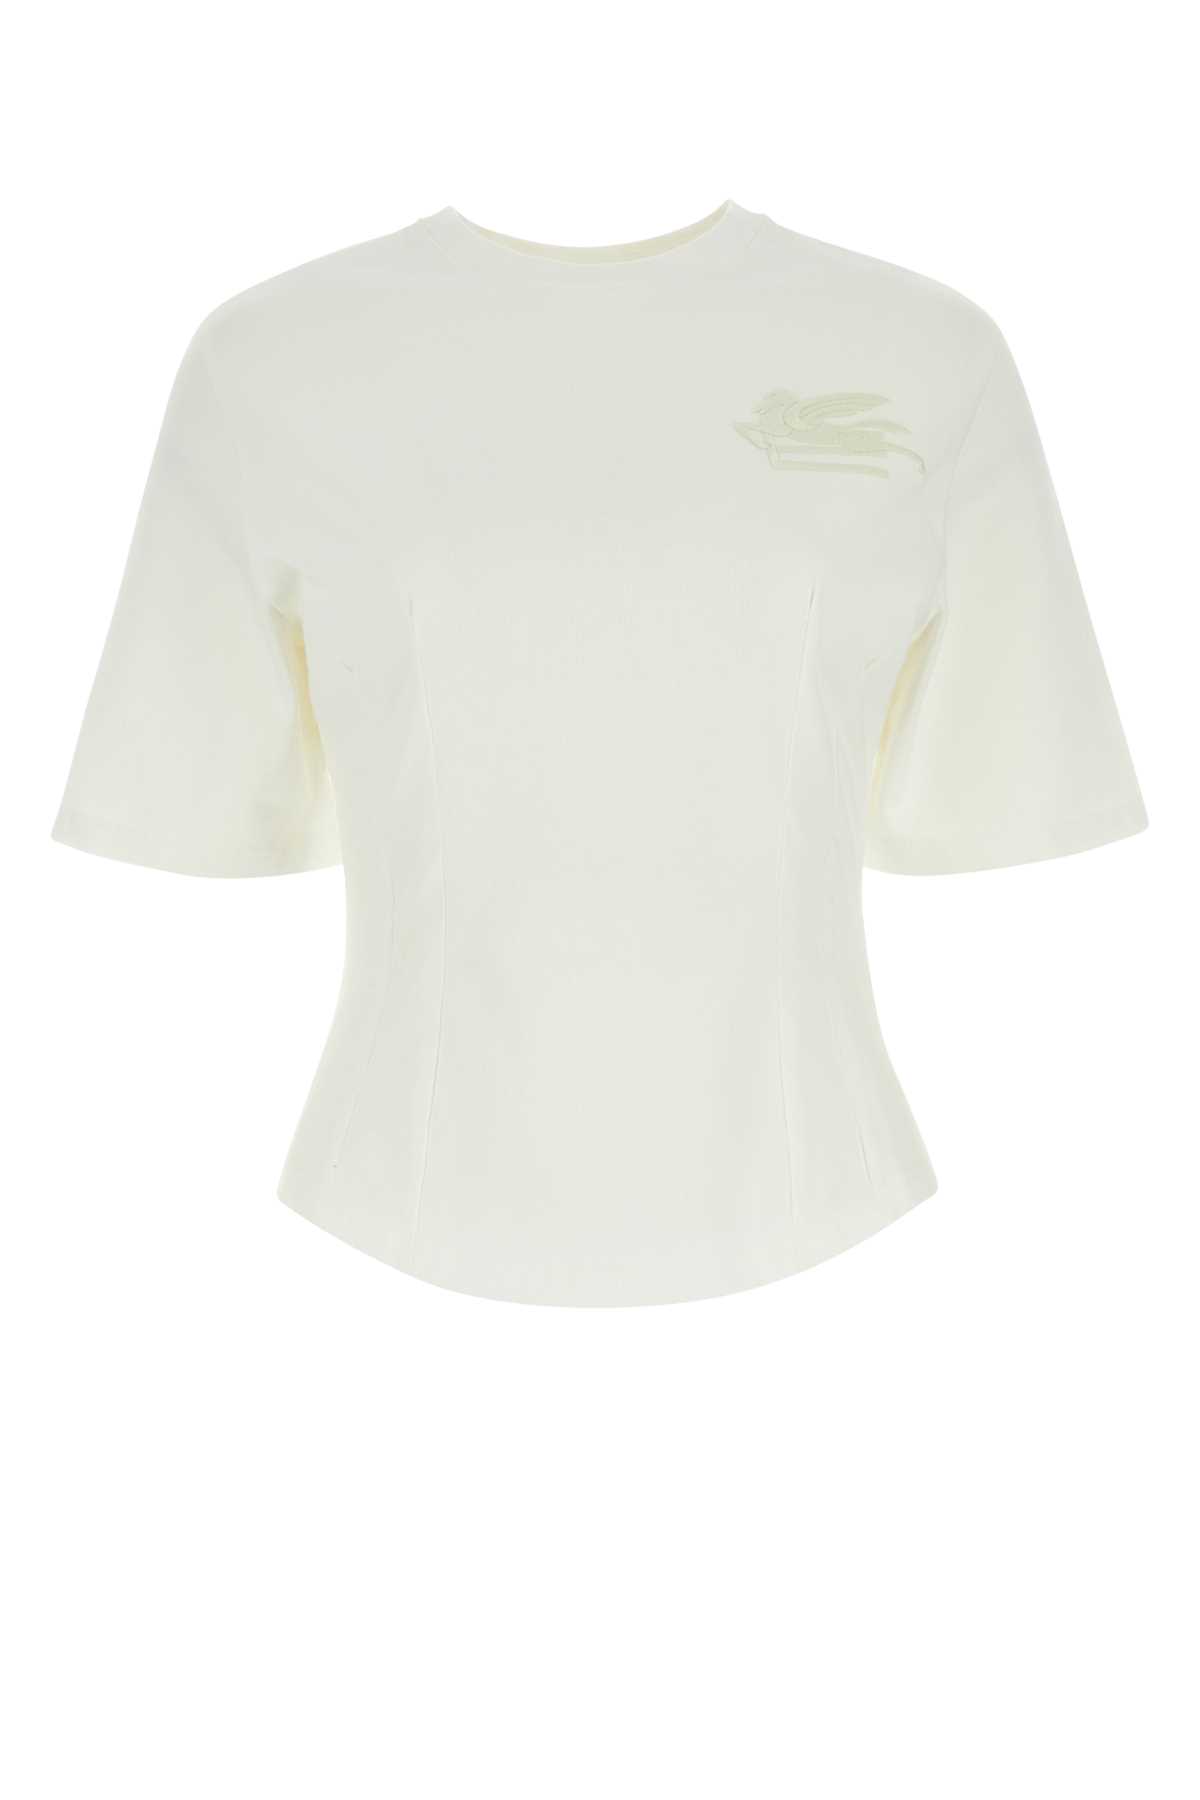 Etro White Cotton T-shirt